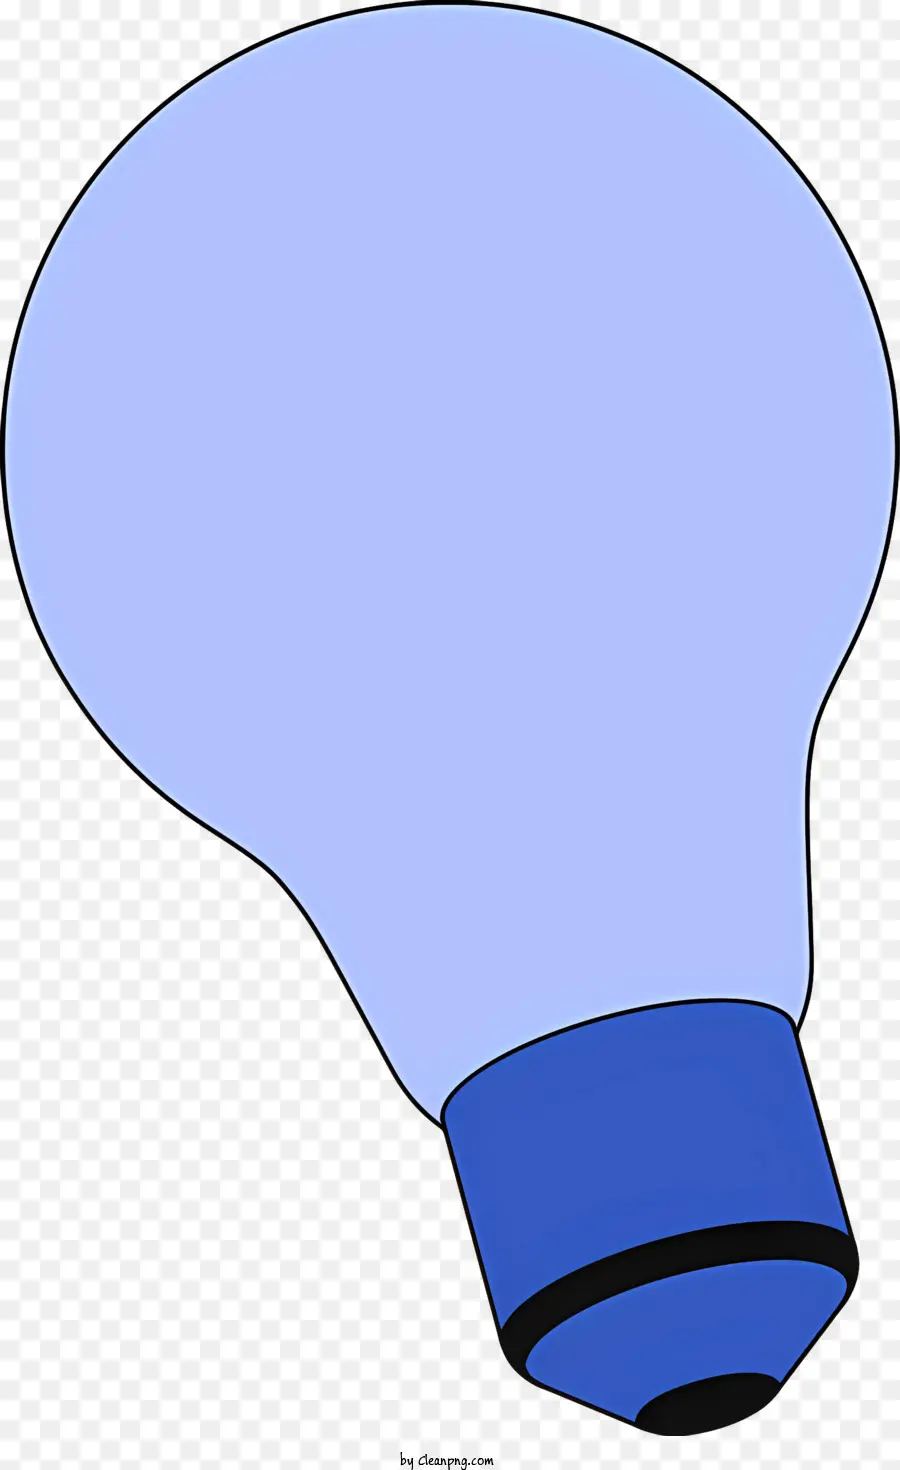 Oggetti Blue Lulb Blue Lulb Reflective Lulbo Lulbo Enchiting Design di illuminazione ispirazione - La luce blu brilla dalla presa lampadina